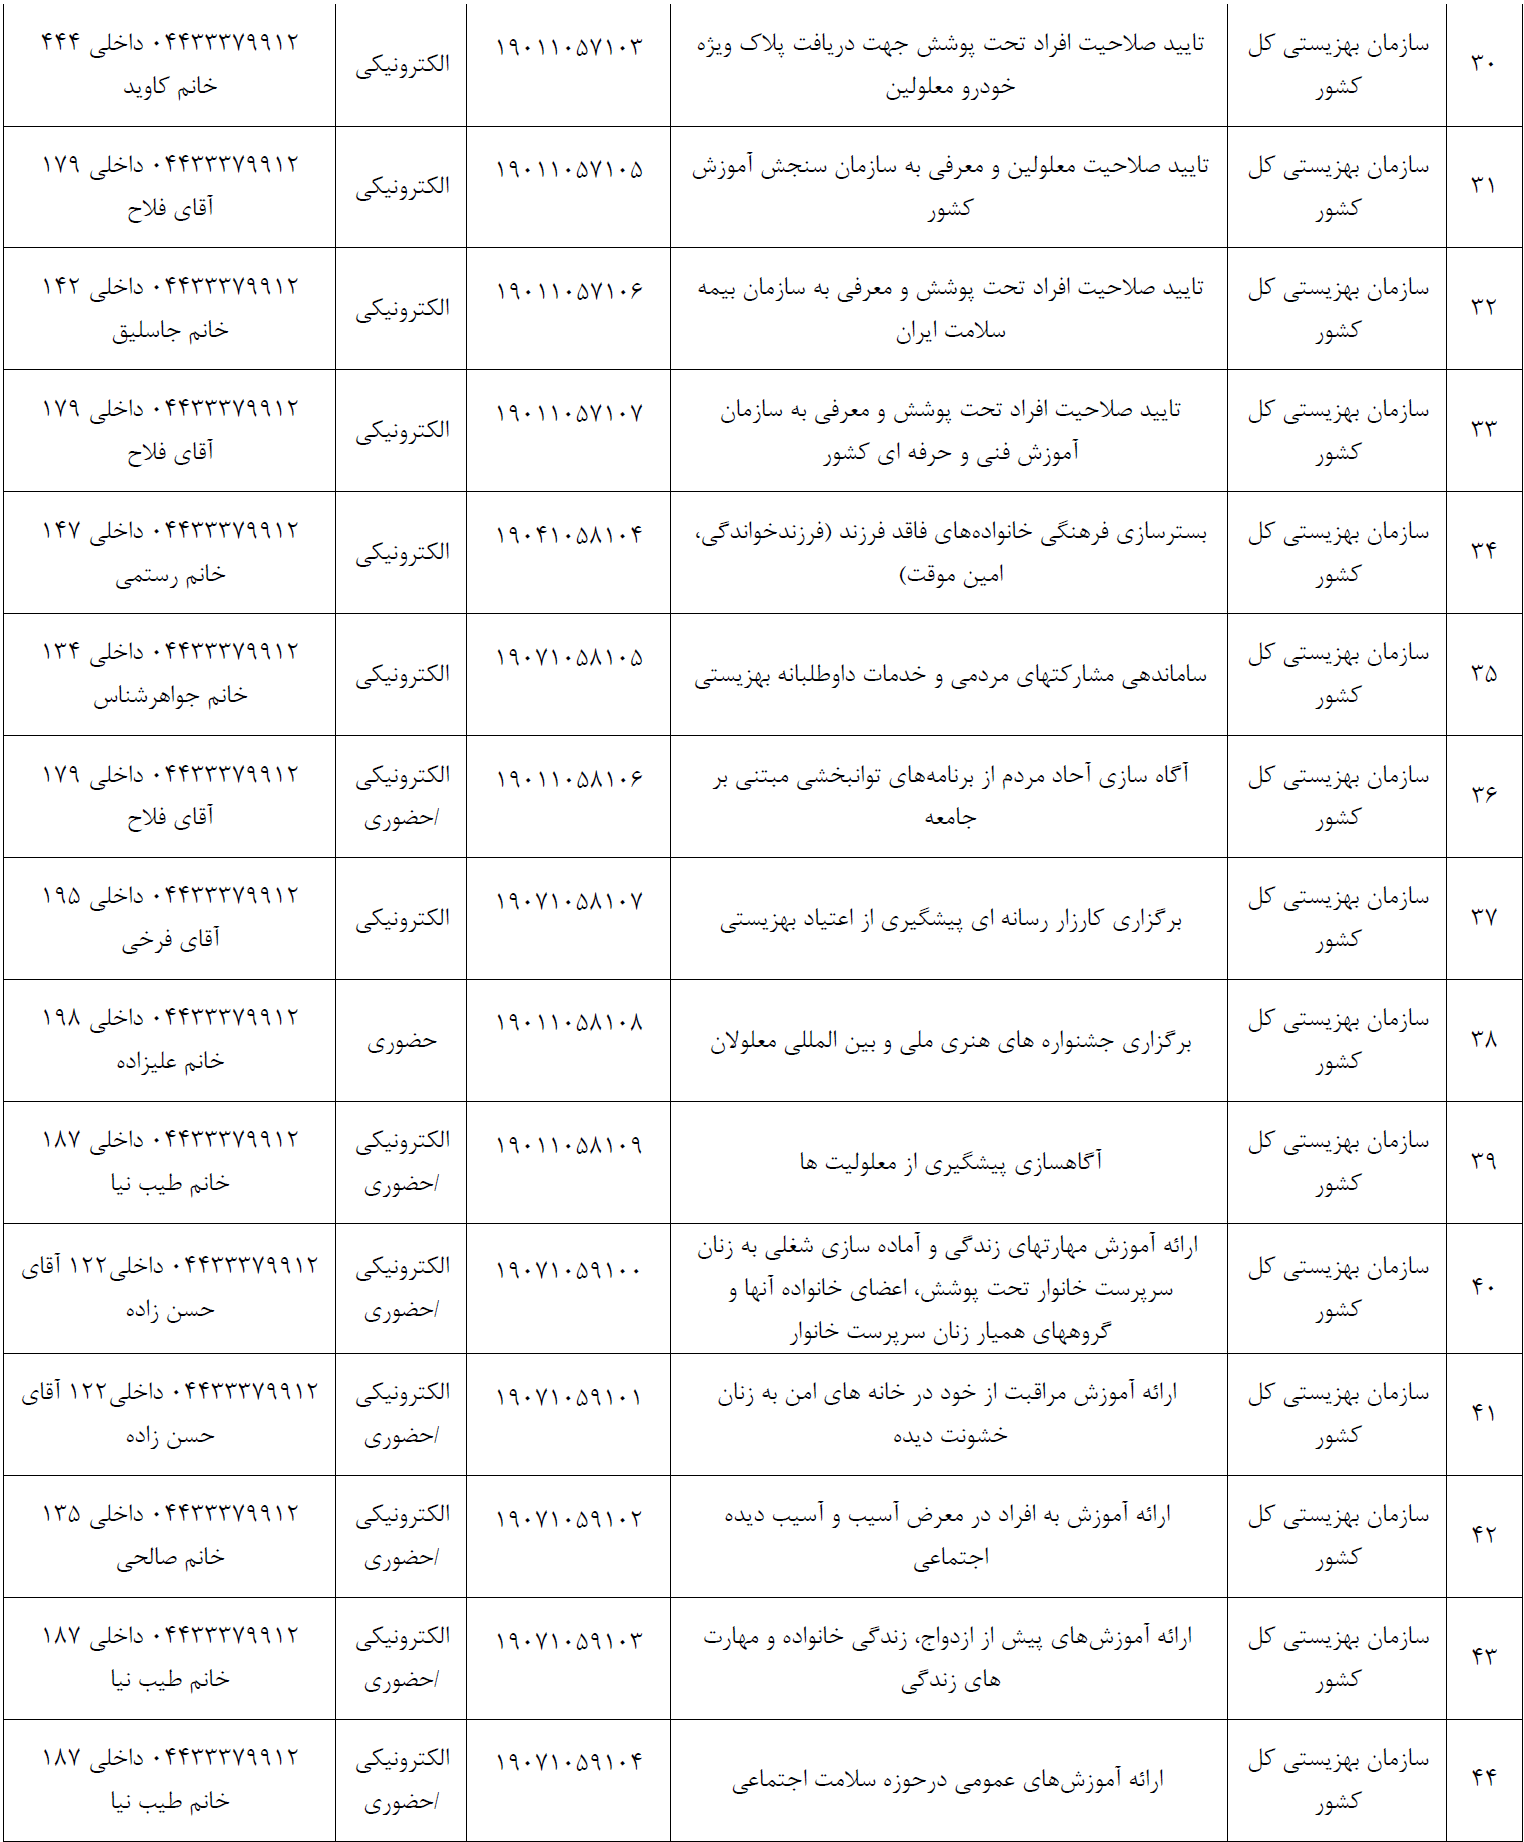 جدول وضعیت خدمات ارائه شده توسط دستگاه های اجرایی اداره کل بهزیستی  استان آذربایجان غربی